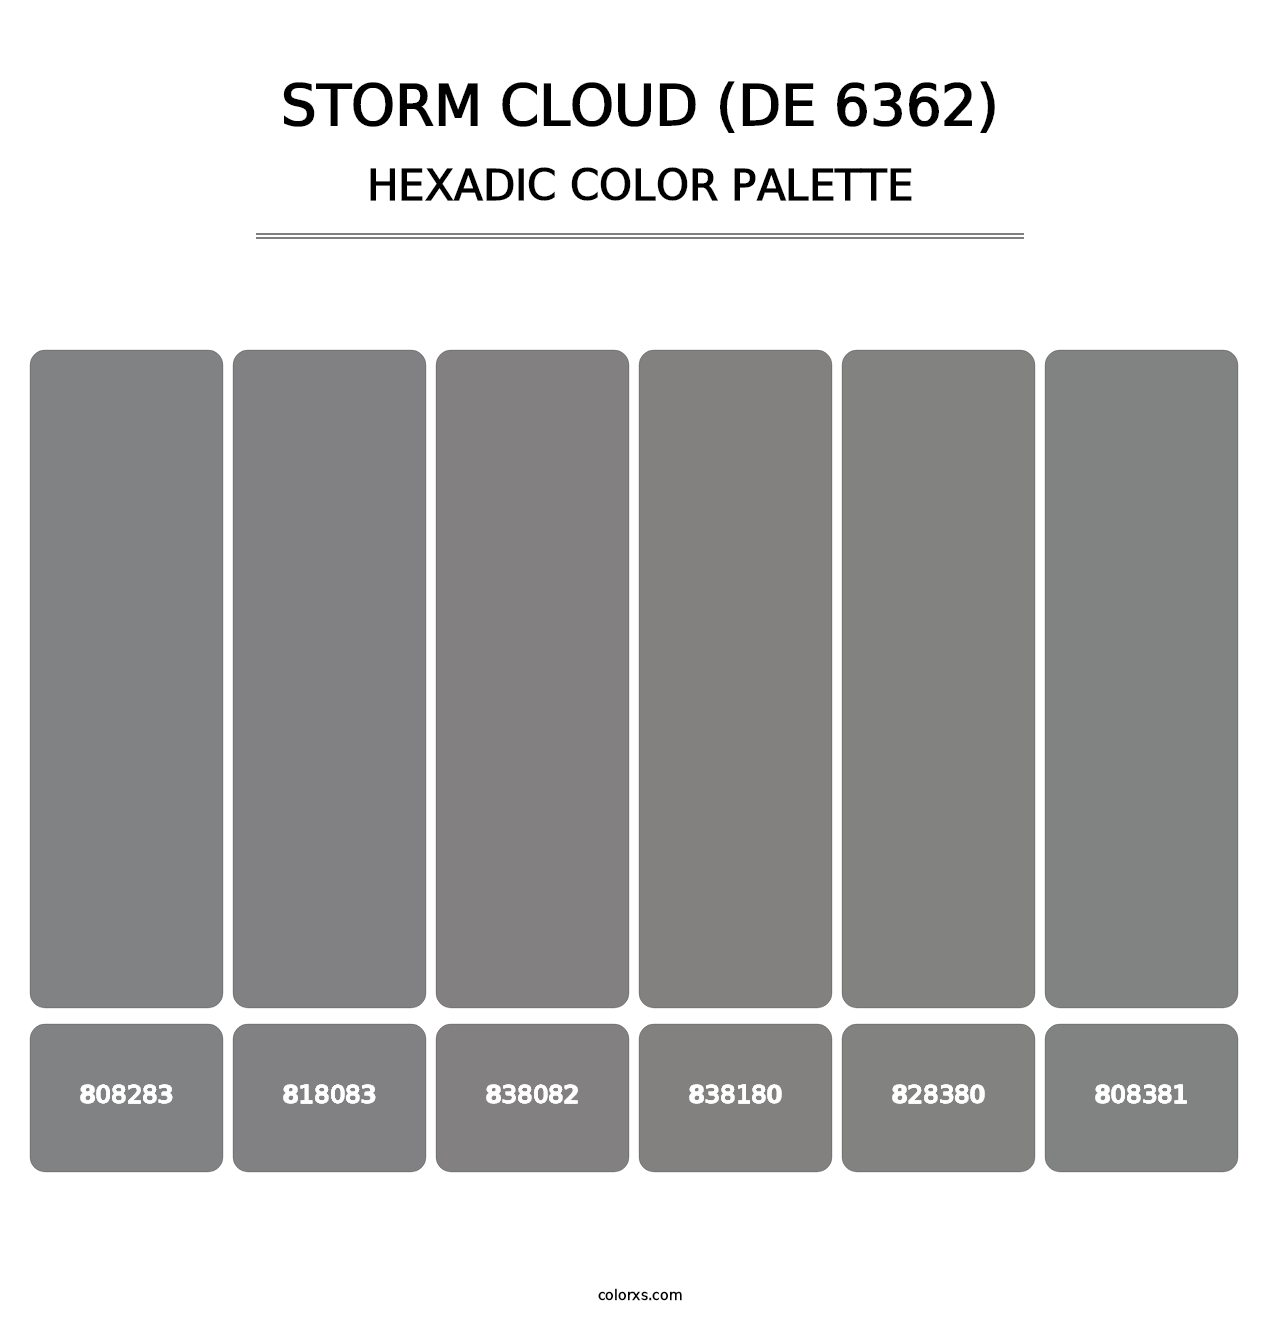 Storm Cloud (DE 6362) - Hexadic Color Palette